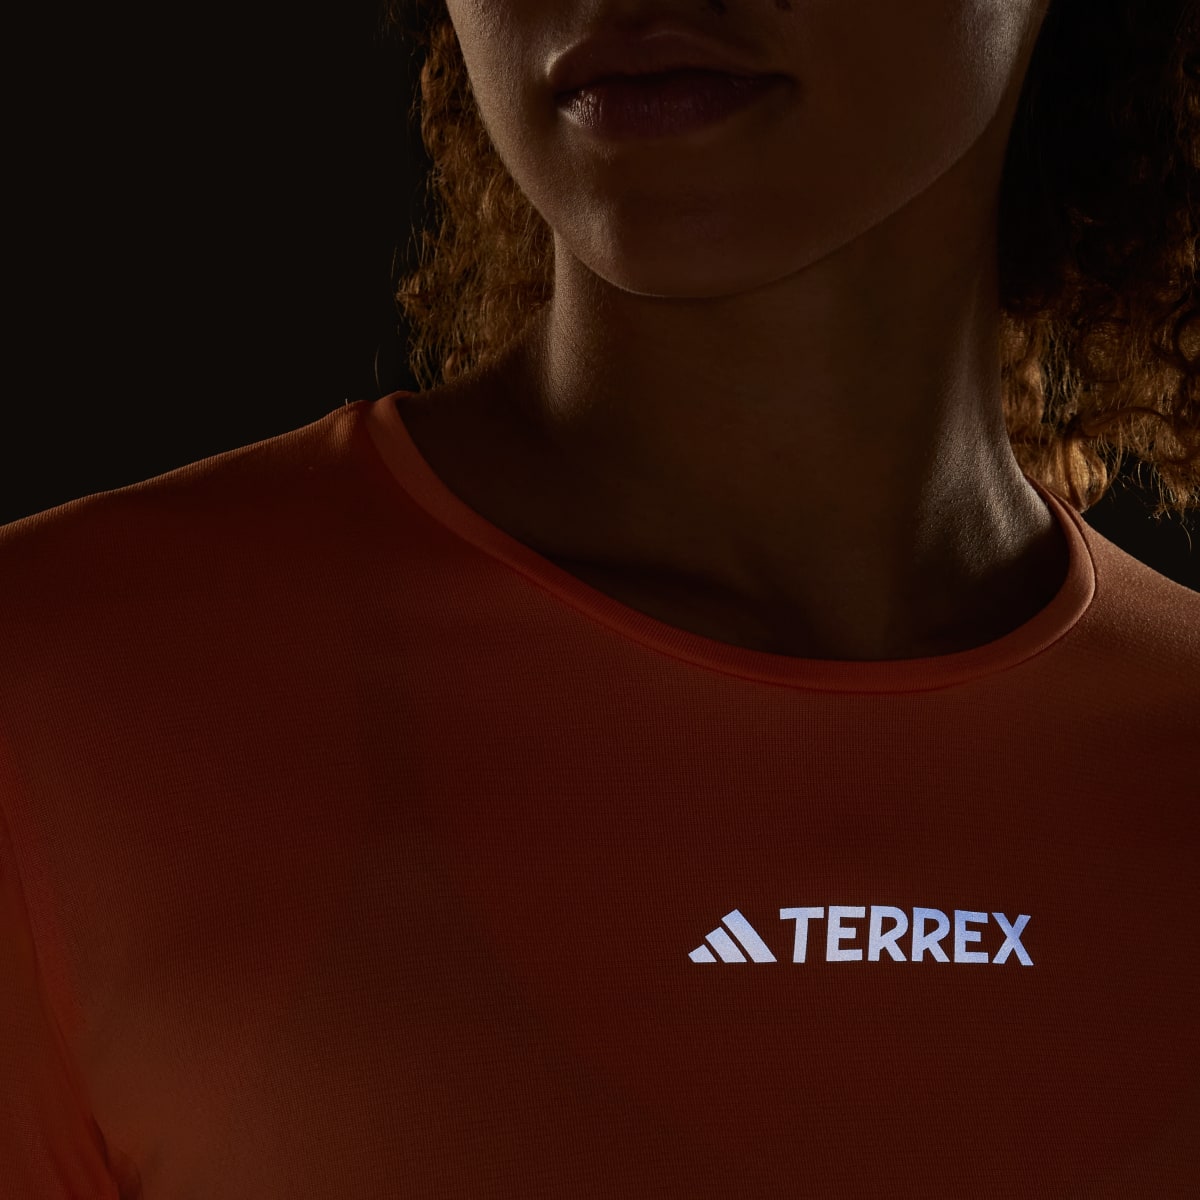 Adidas T-shirt Multi TERREX. 8